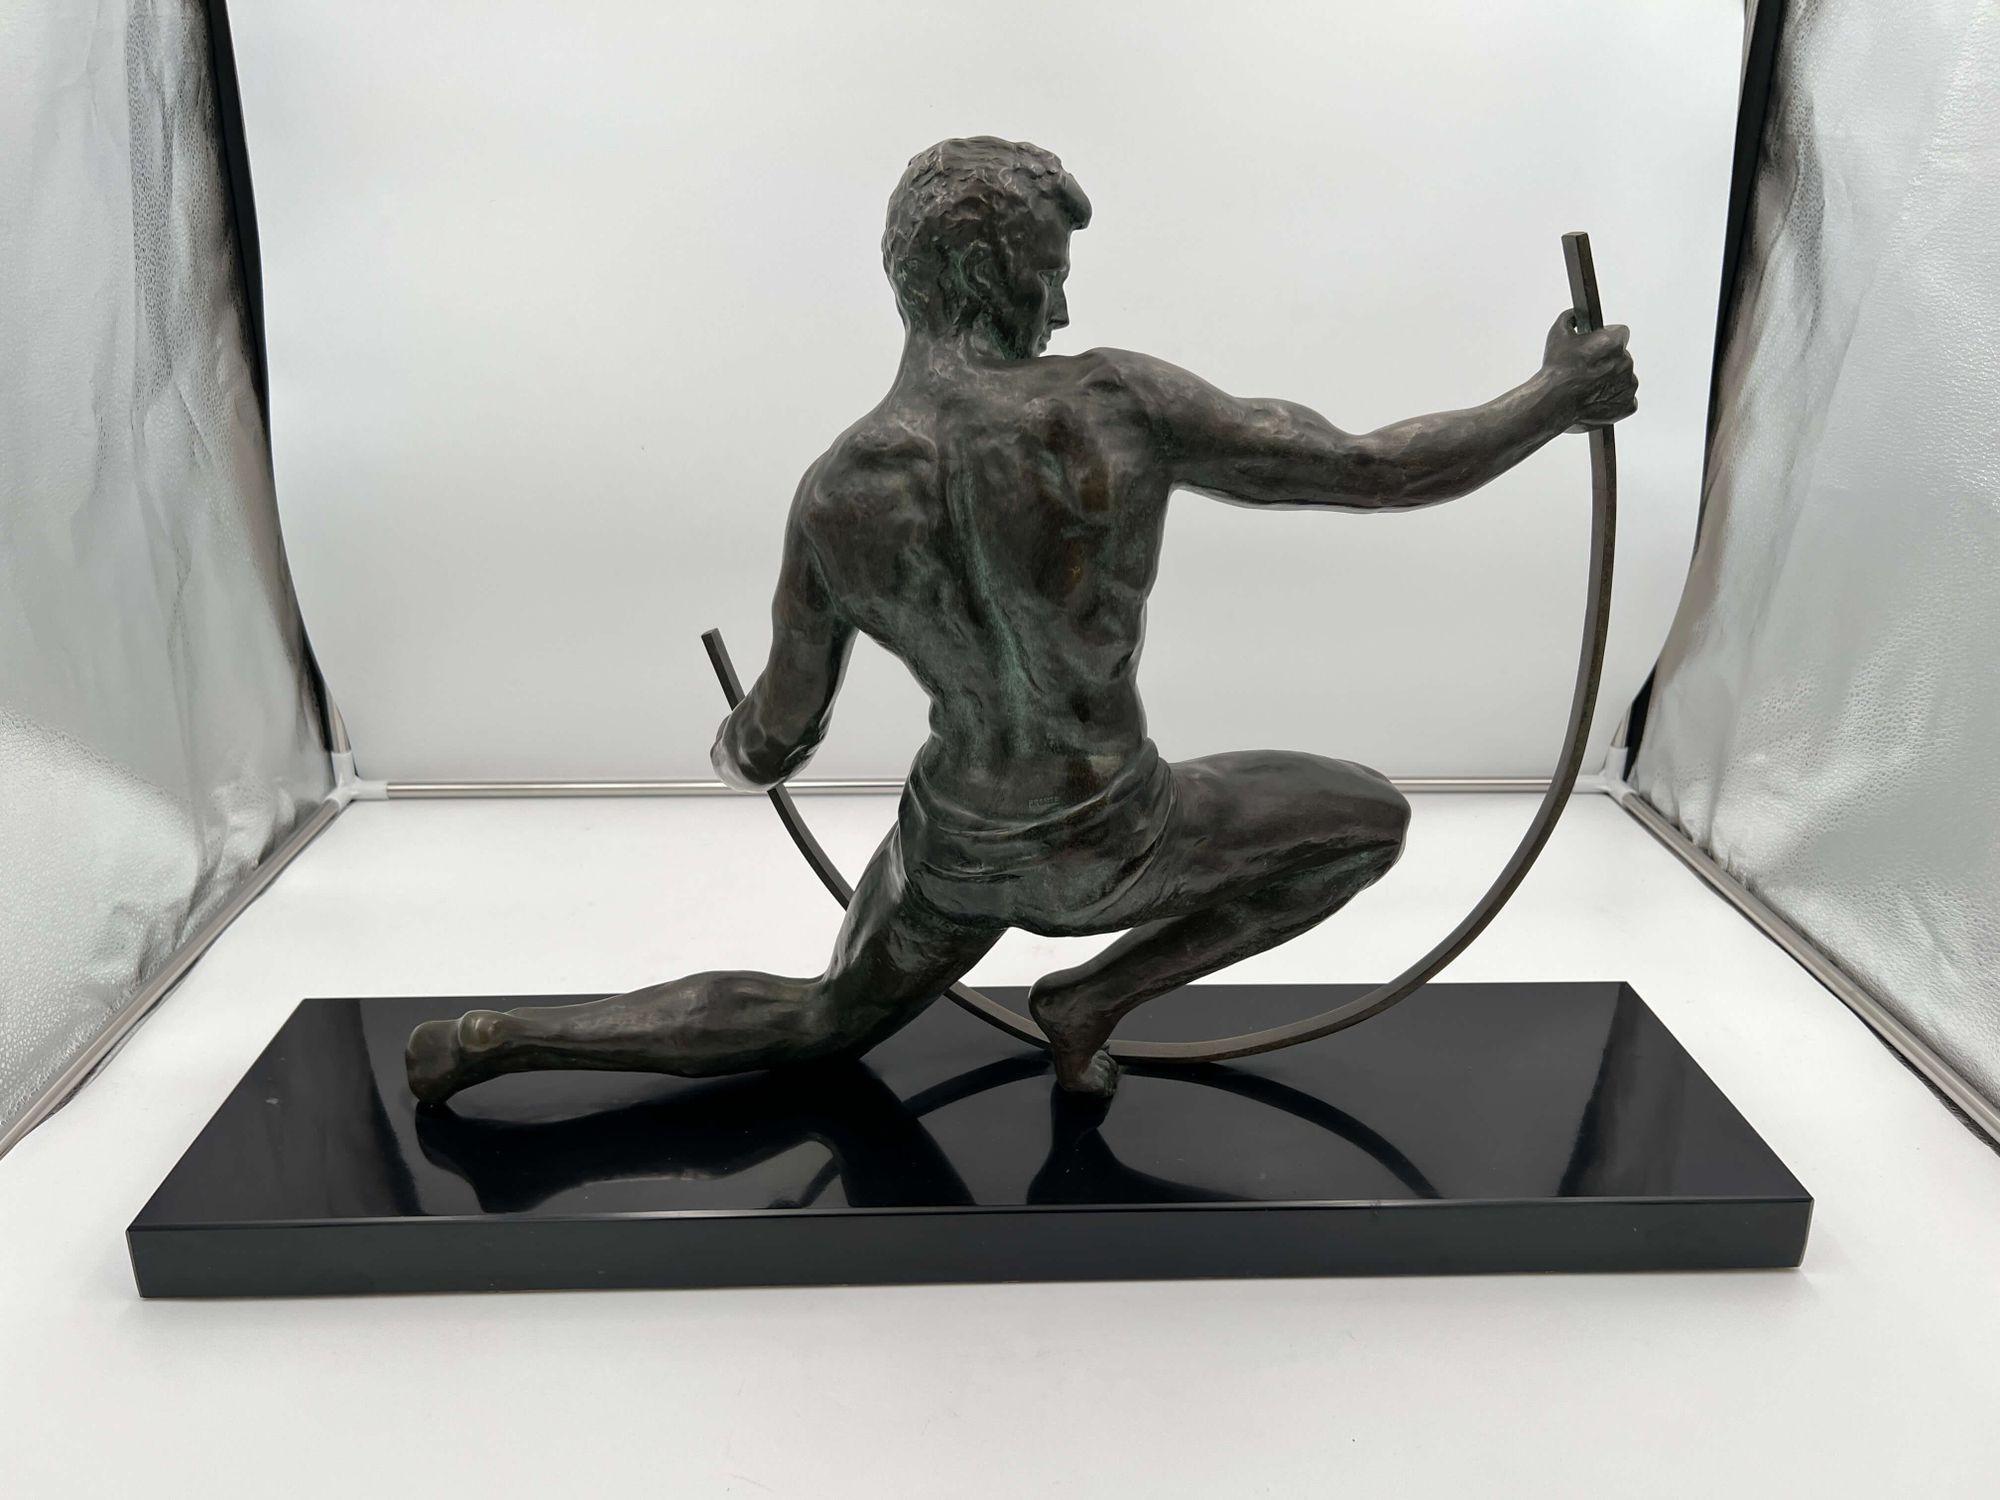 Wunderschöne große Art Deco Bronzeskulptur, die einen Muscar-Mann darstellt, der einen Eisenstab biegt, von J. de Roncourt aus Frankreich um 1930.
* Bronze (gestempelt), dunkel patiniert
* Signatur auf dem Sockel: J. de Roncourt (Jean de Roncourt)
*